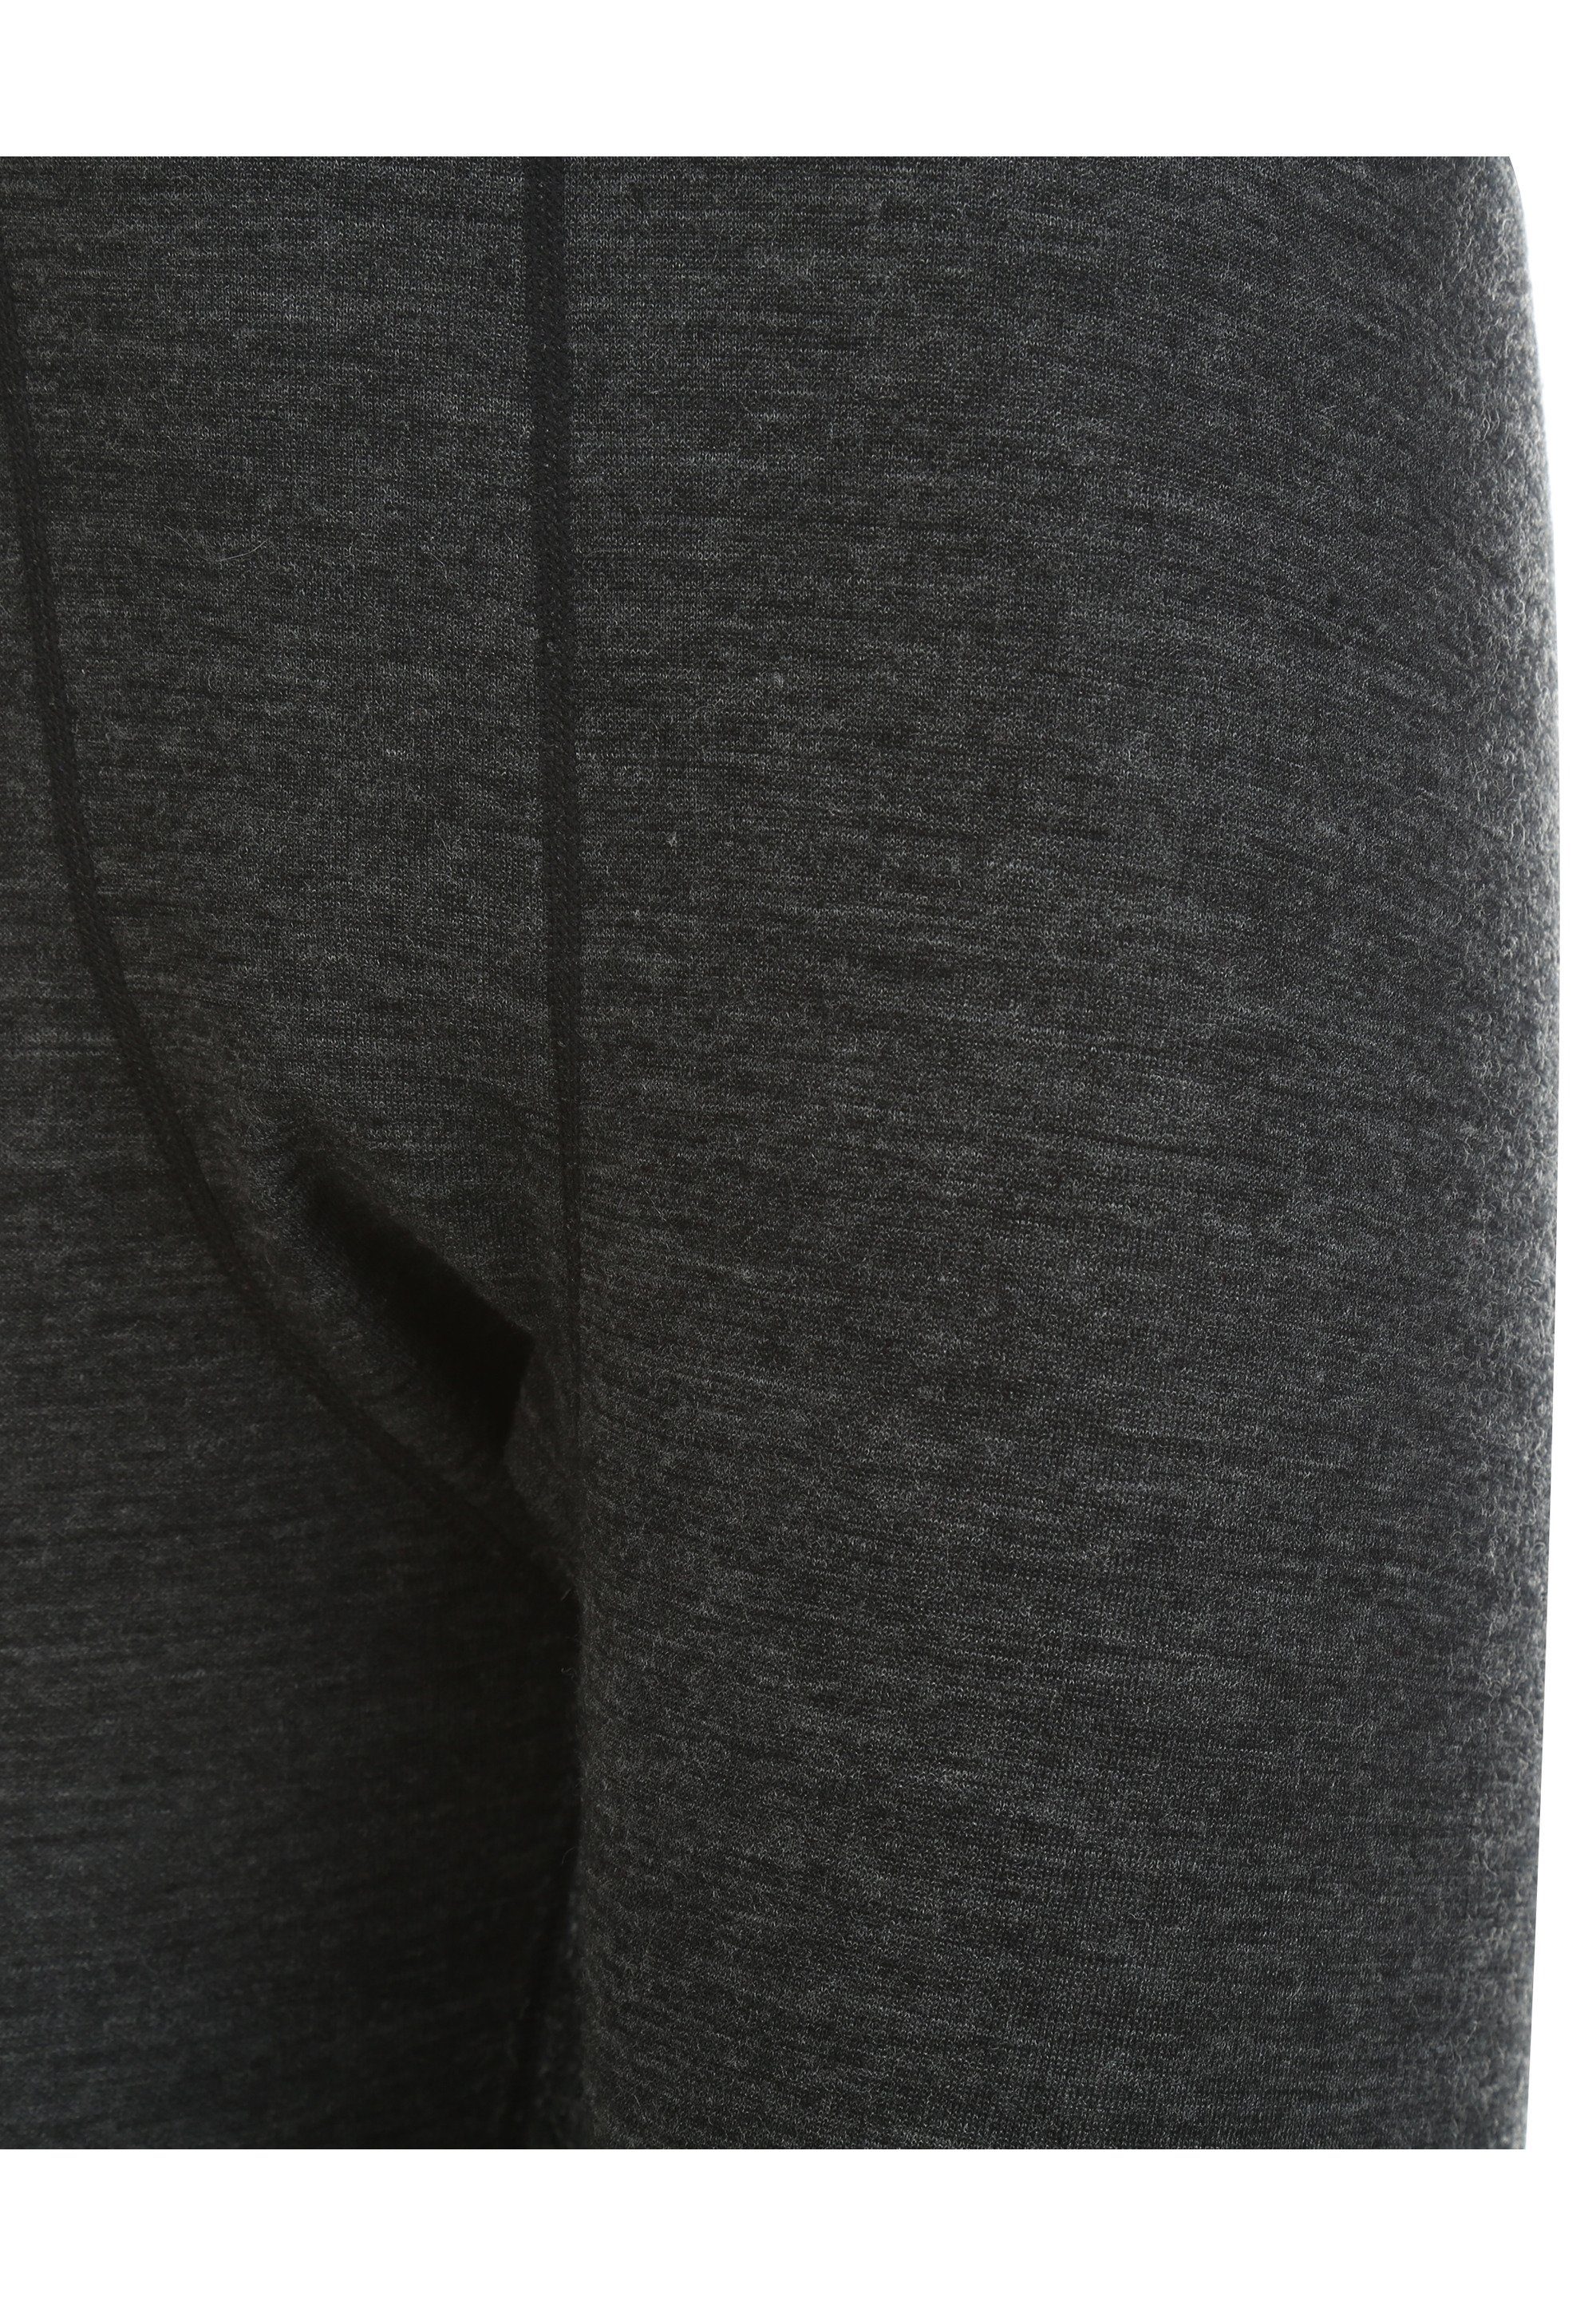 WHISTLER Lange Unterhose BRADLEY mit hohem dunkelgrau Merinowolle-Anteil